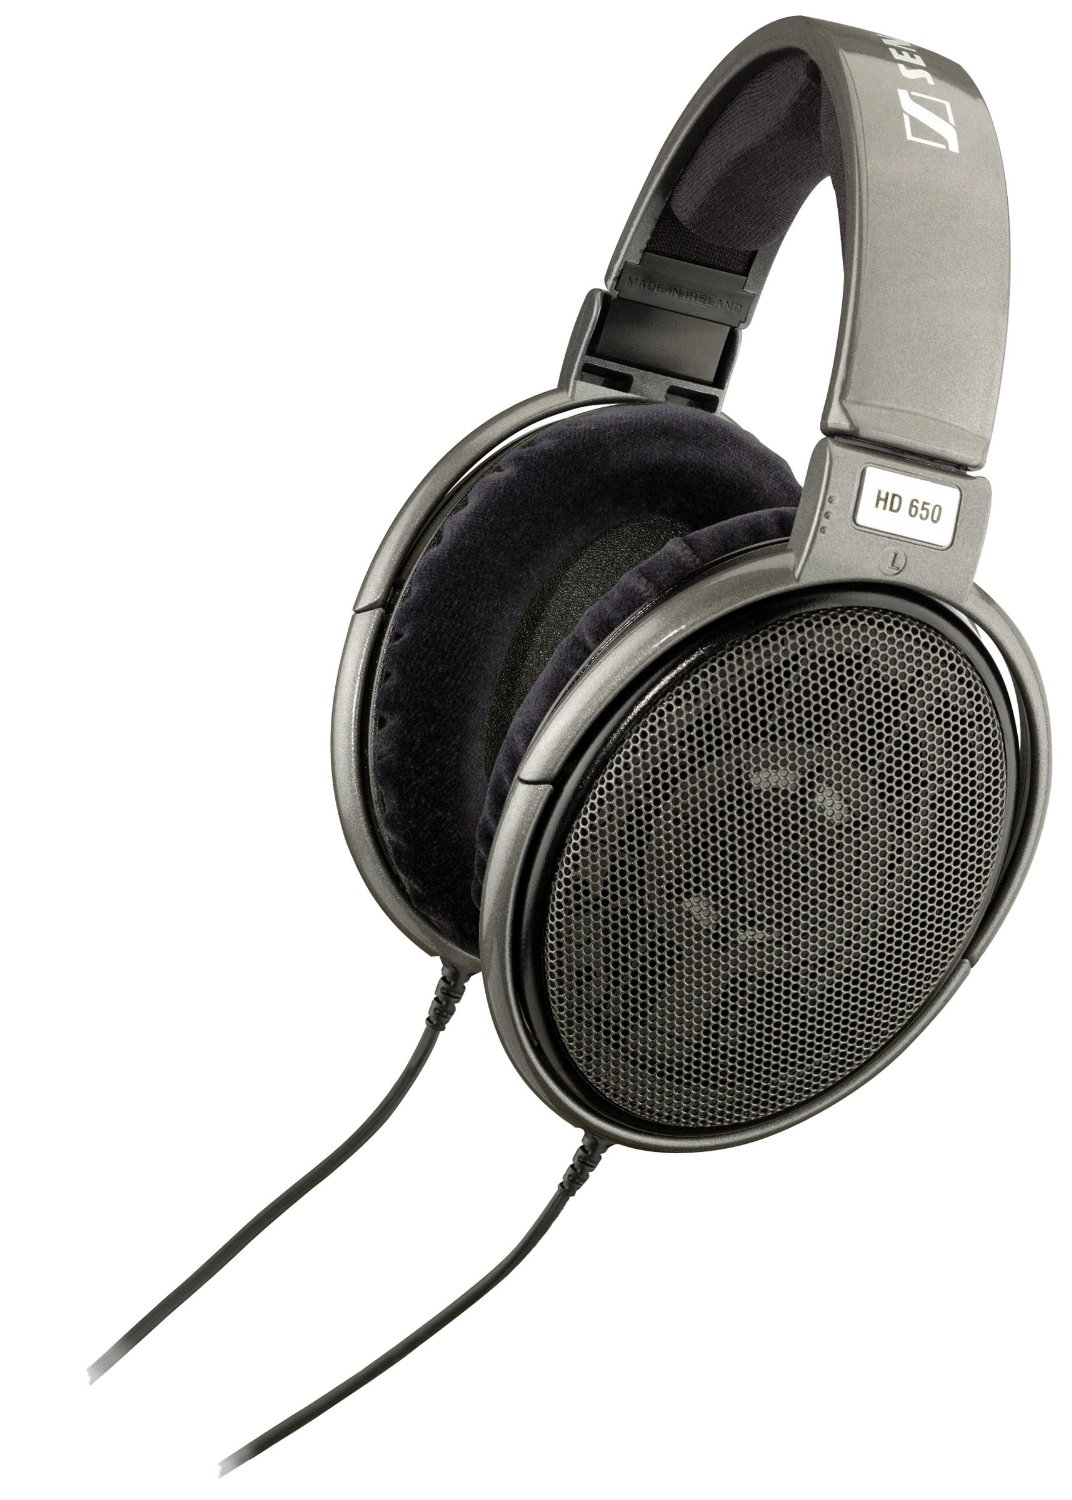 Best Headphones for Mastering Music: Sennheiser HD 650